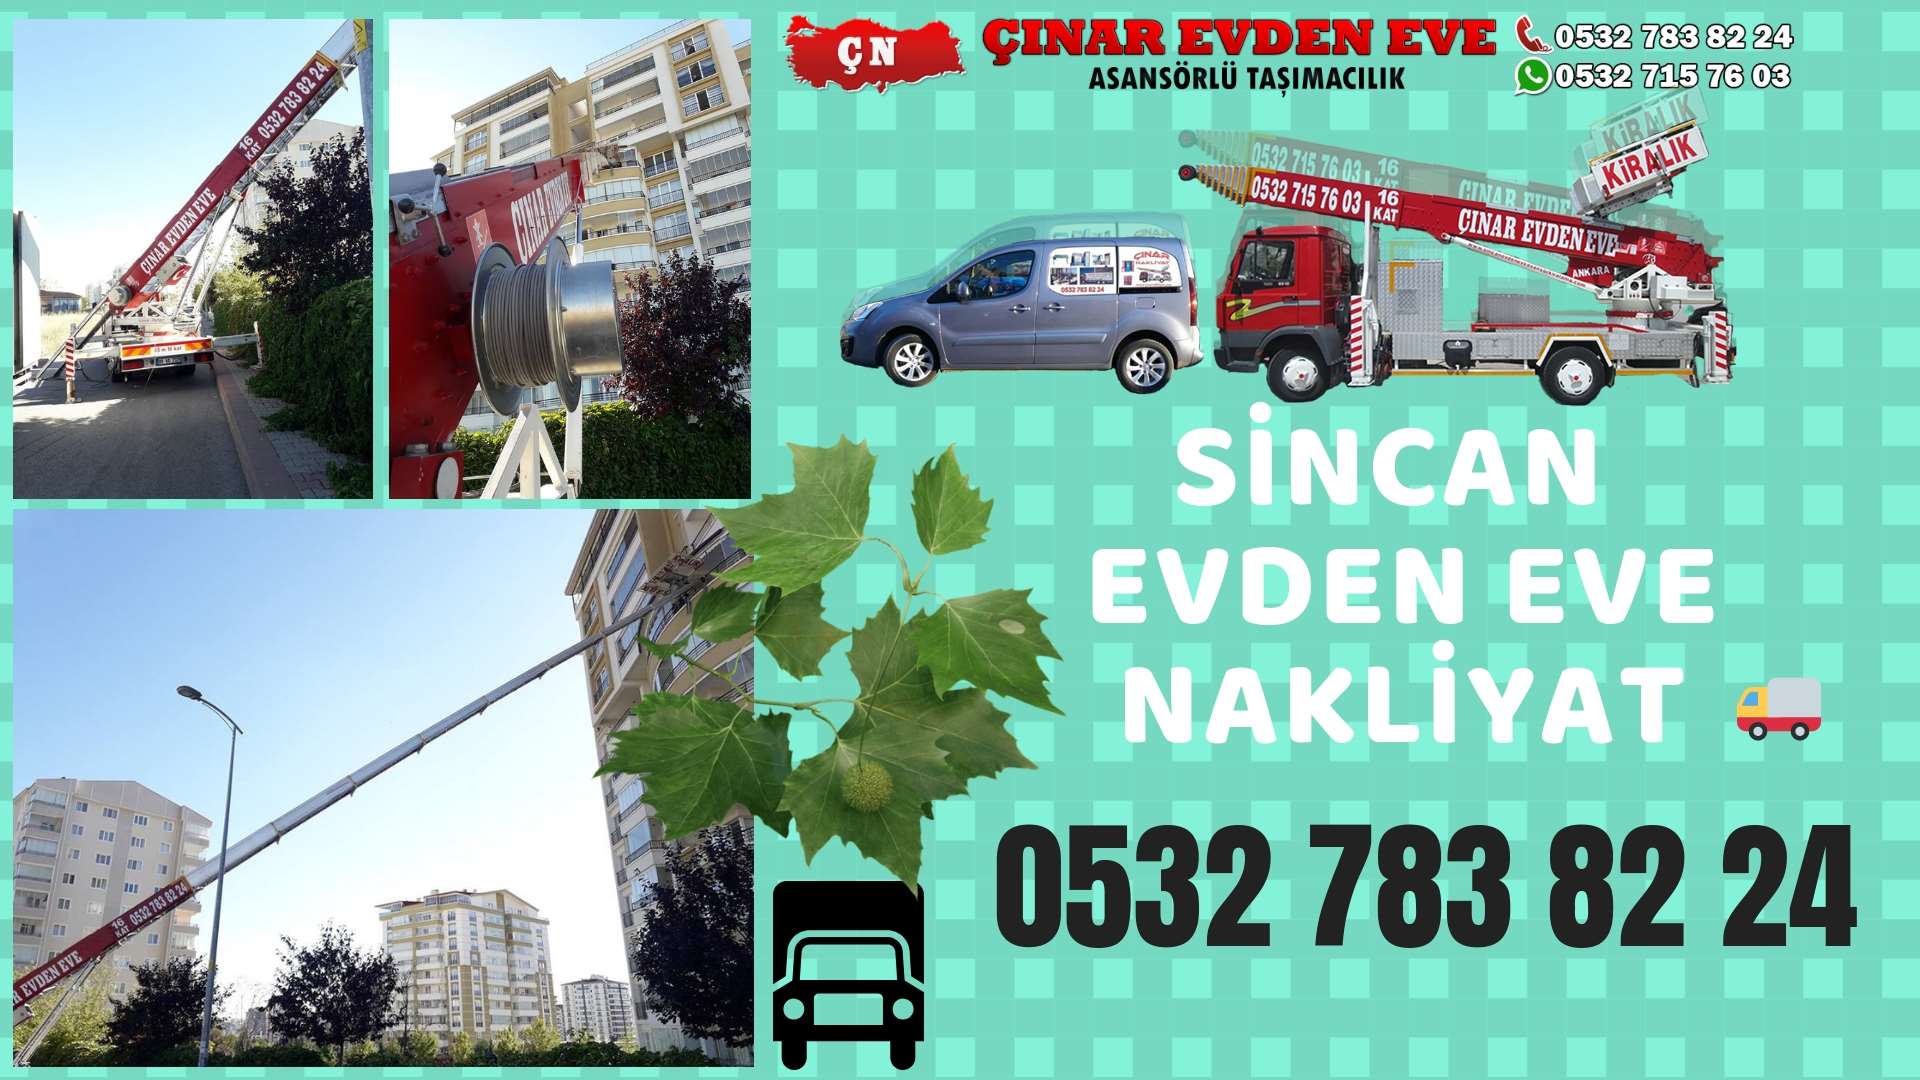 Ankara Altındağ sincan ev eşya taşımacılığı, sincan evden eve 0532 715 76 03